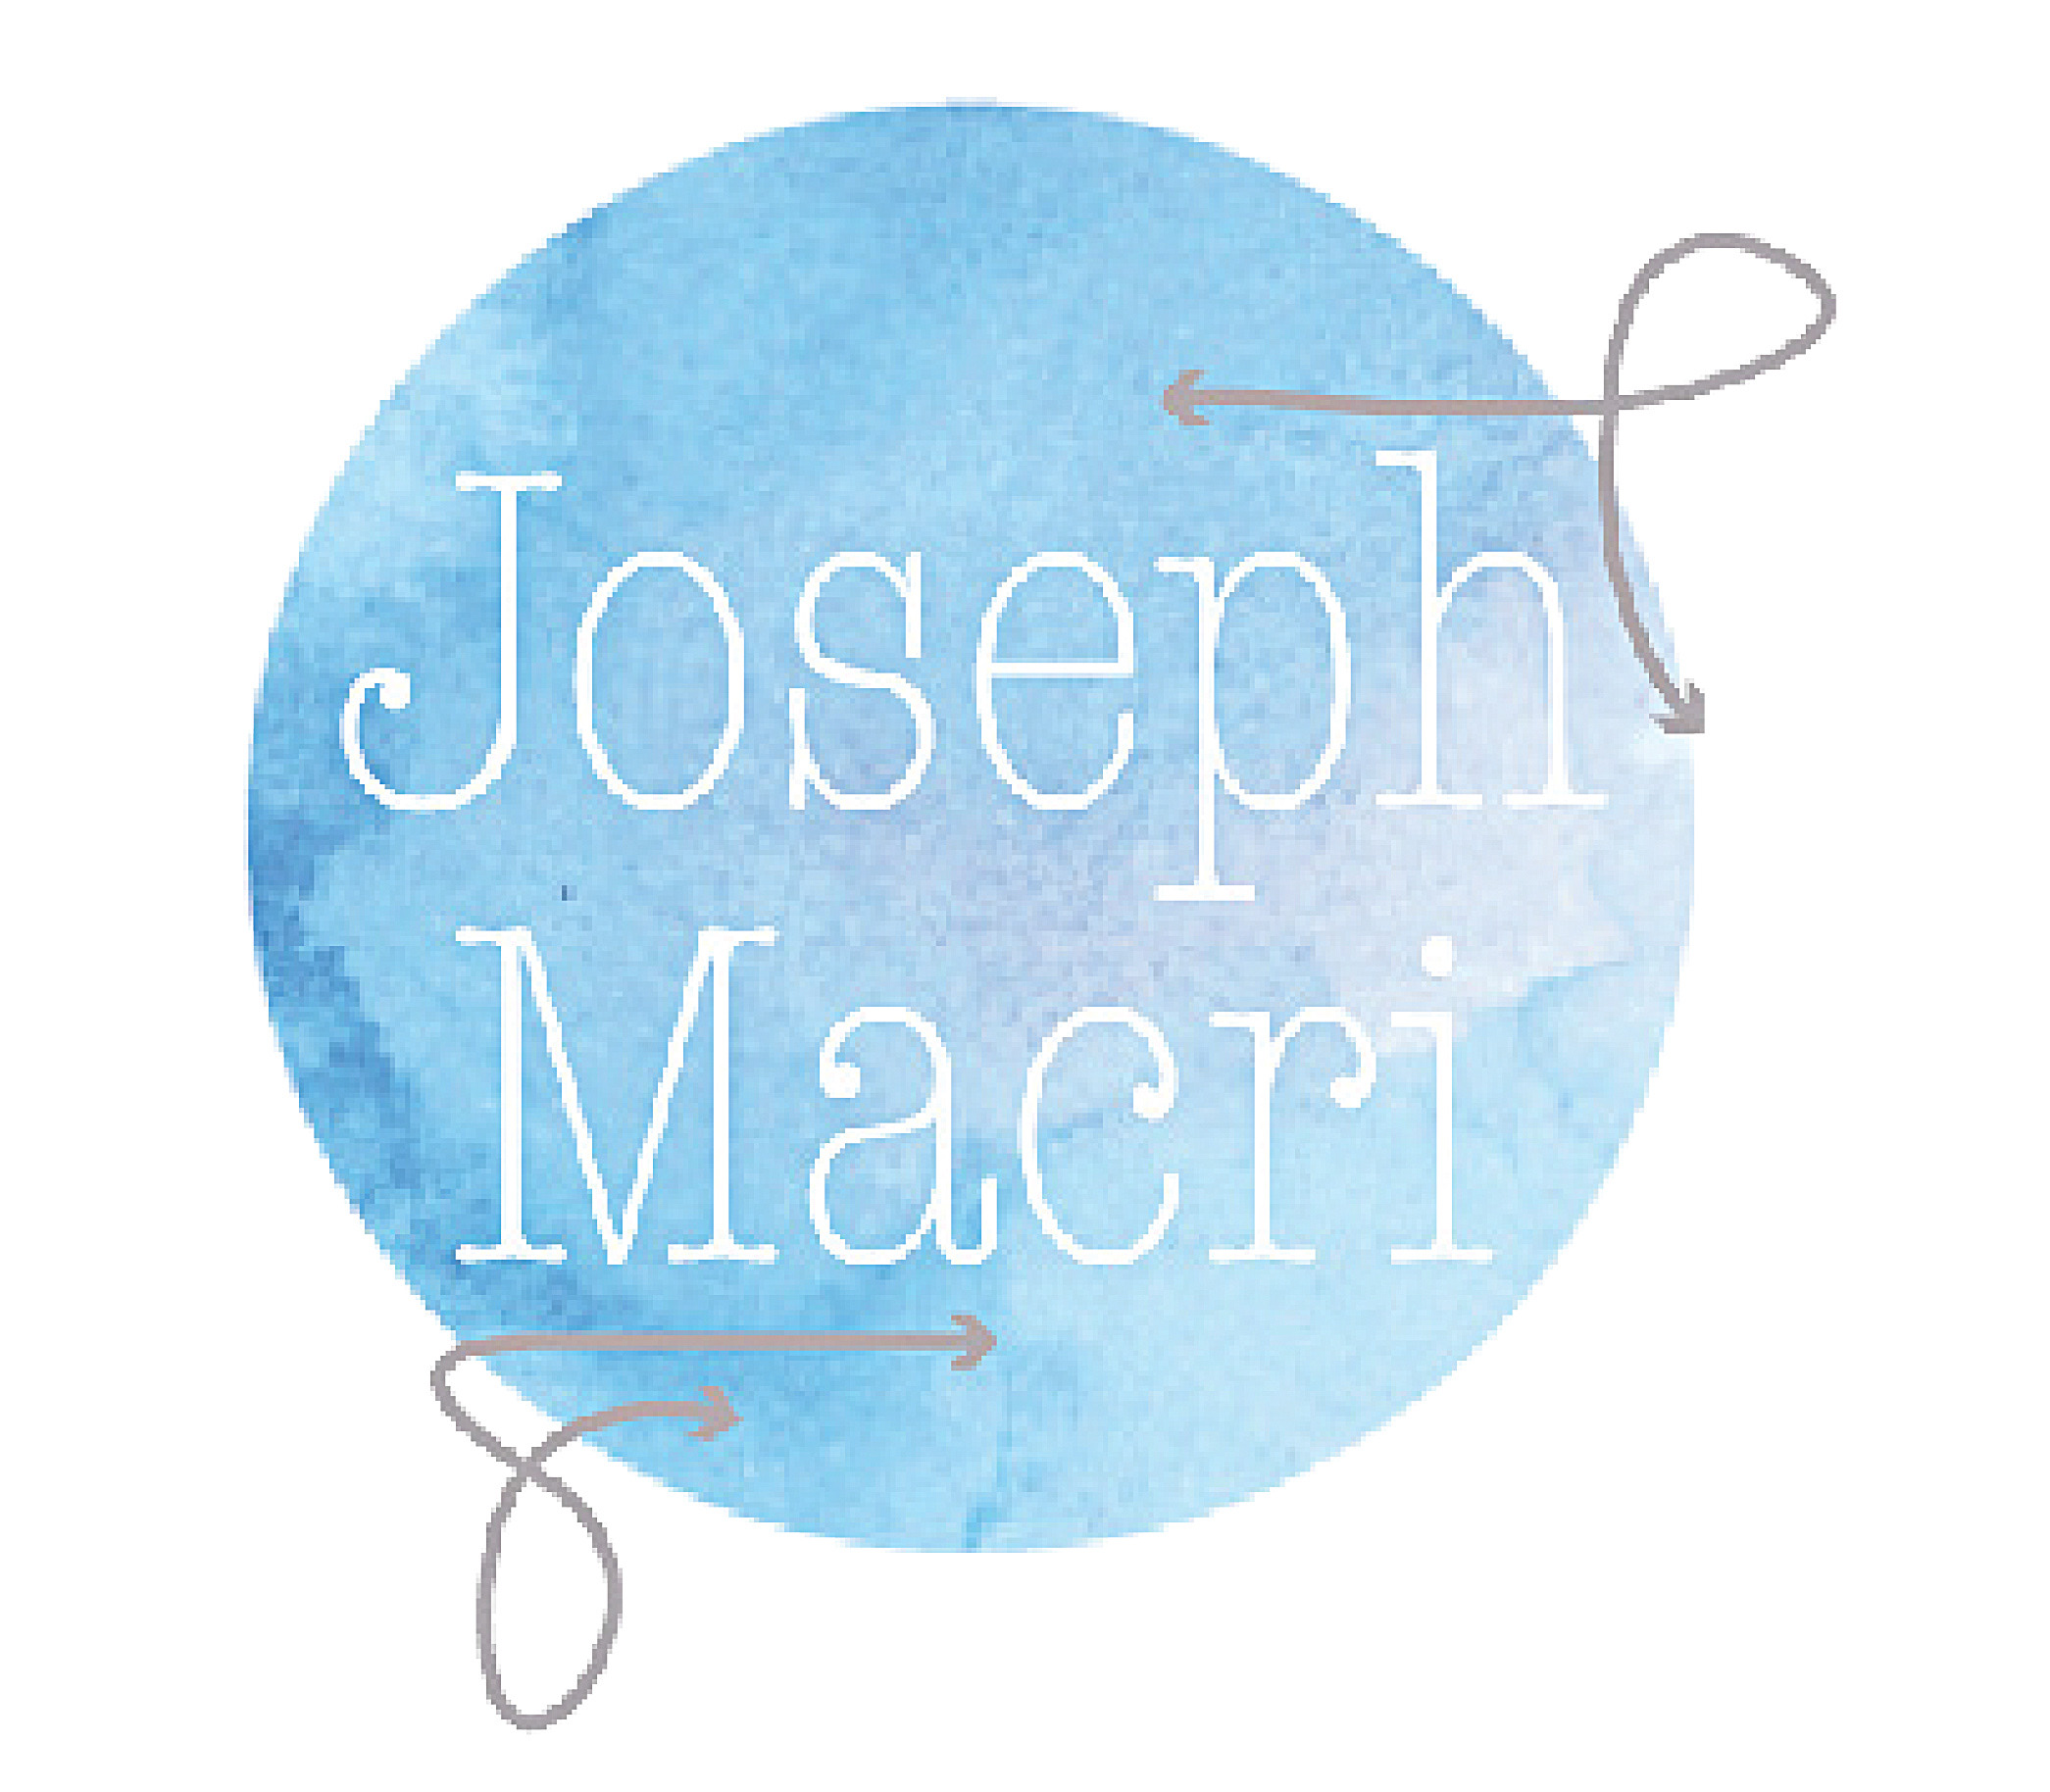 Joseph Macri